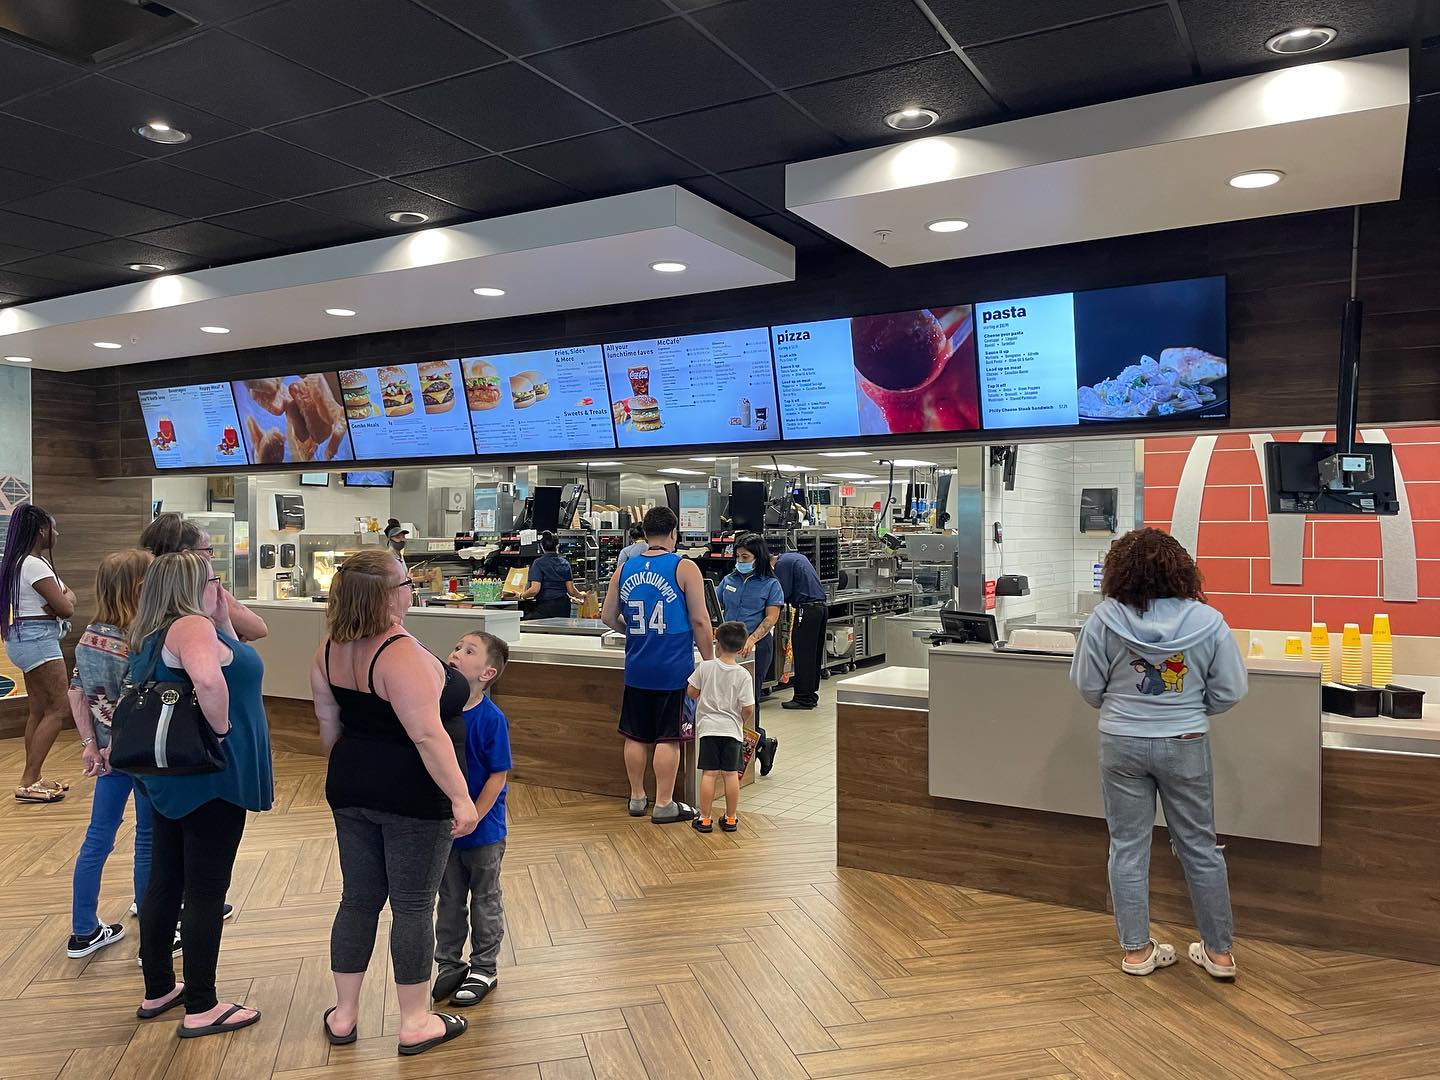 Kassiererin beim größten McDonald’s der Welt – McDonald’s in Orlando